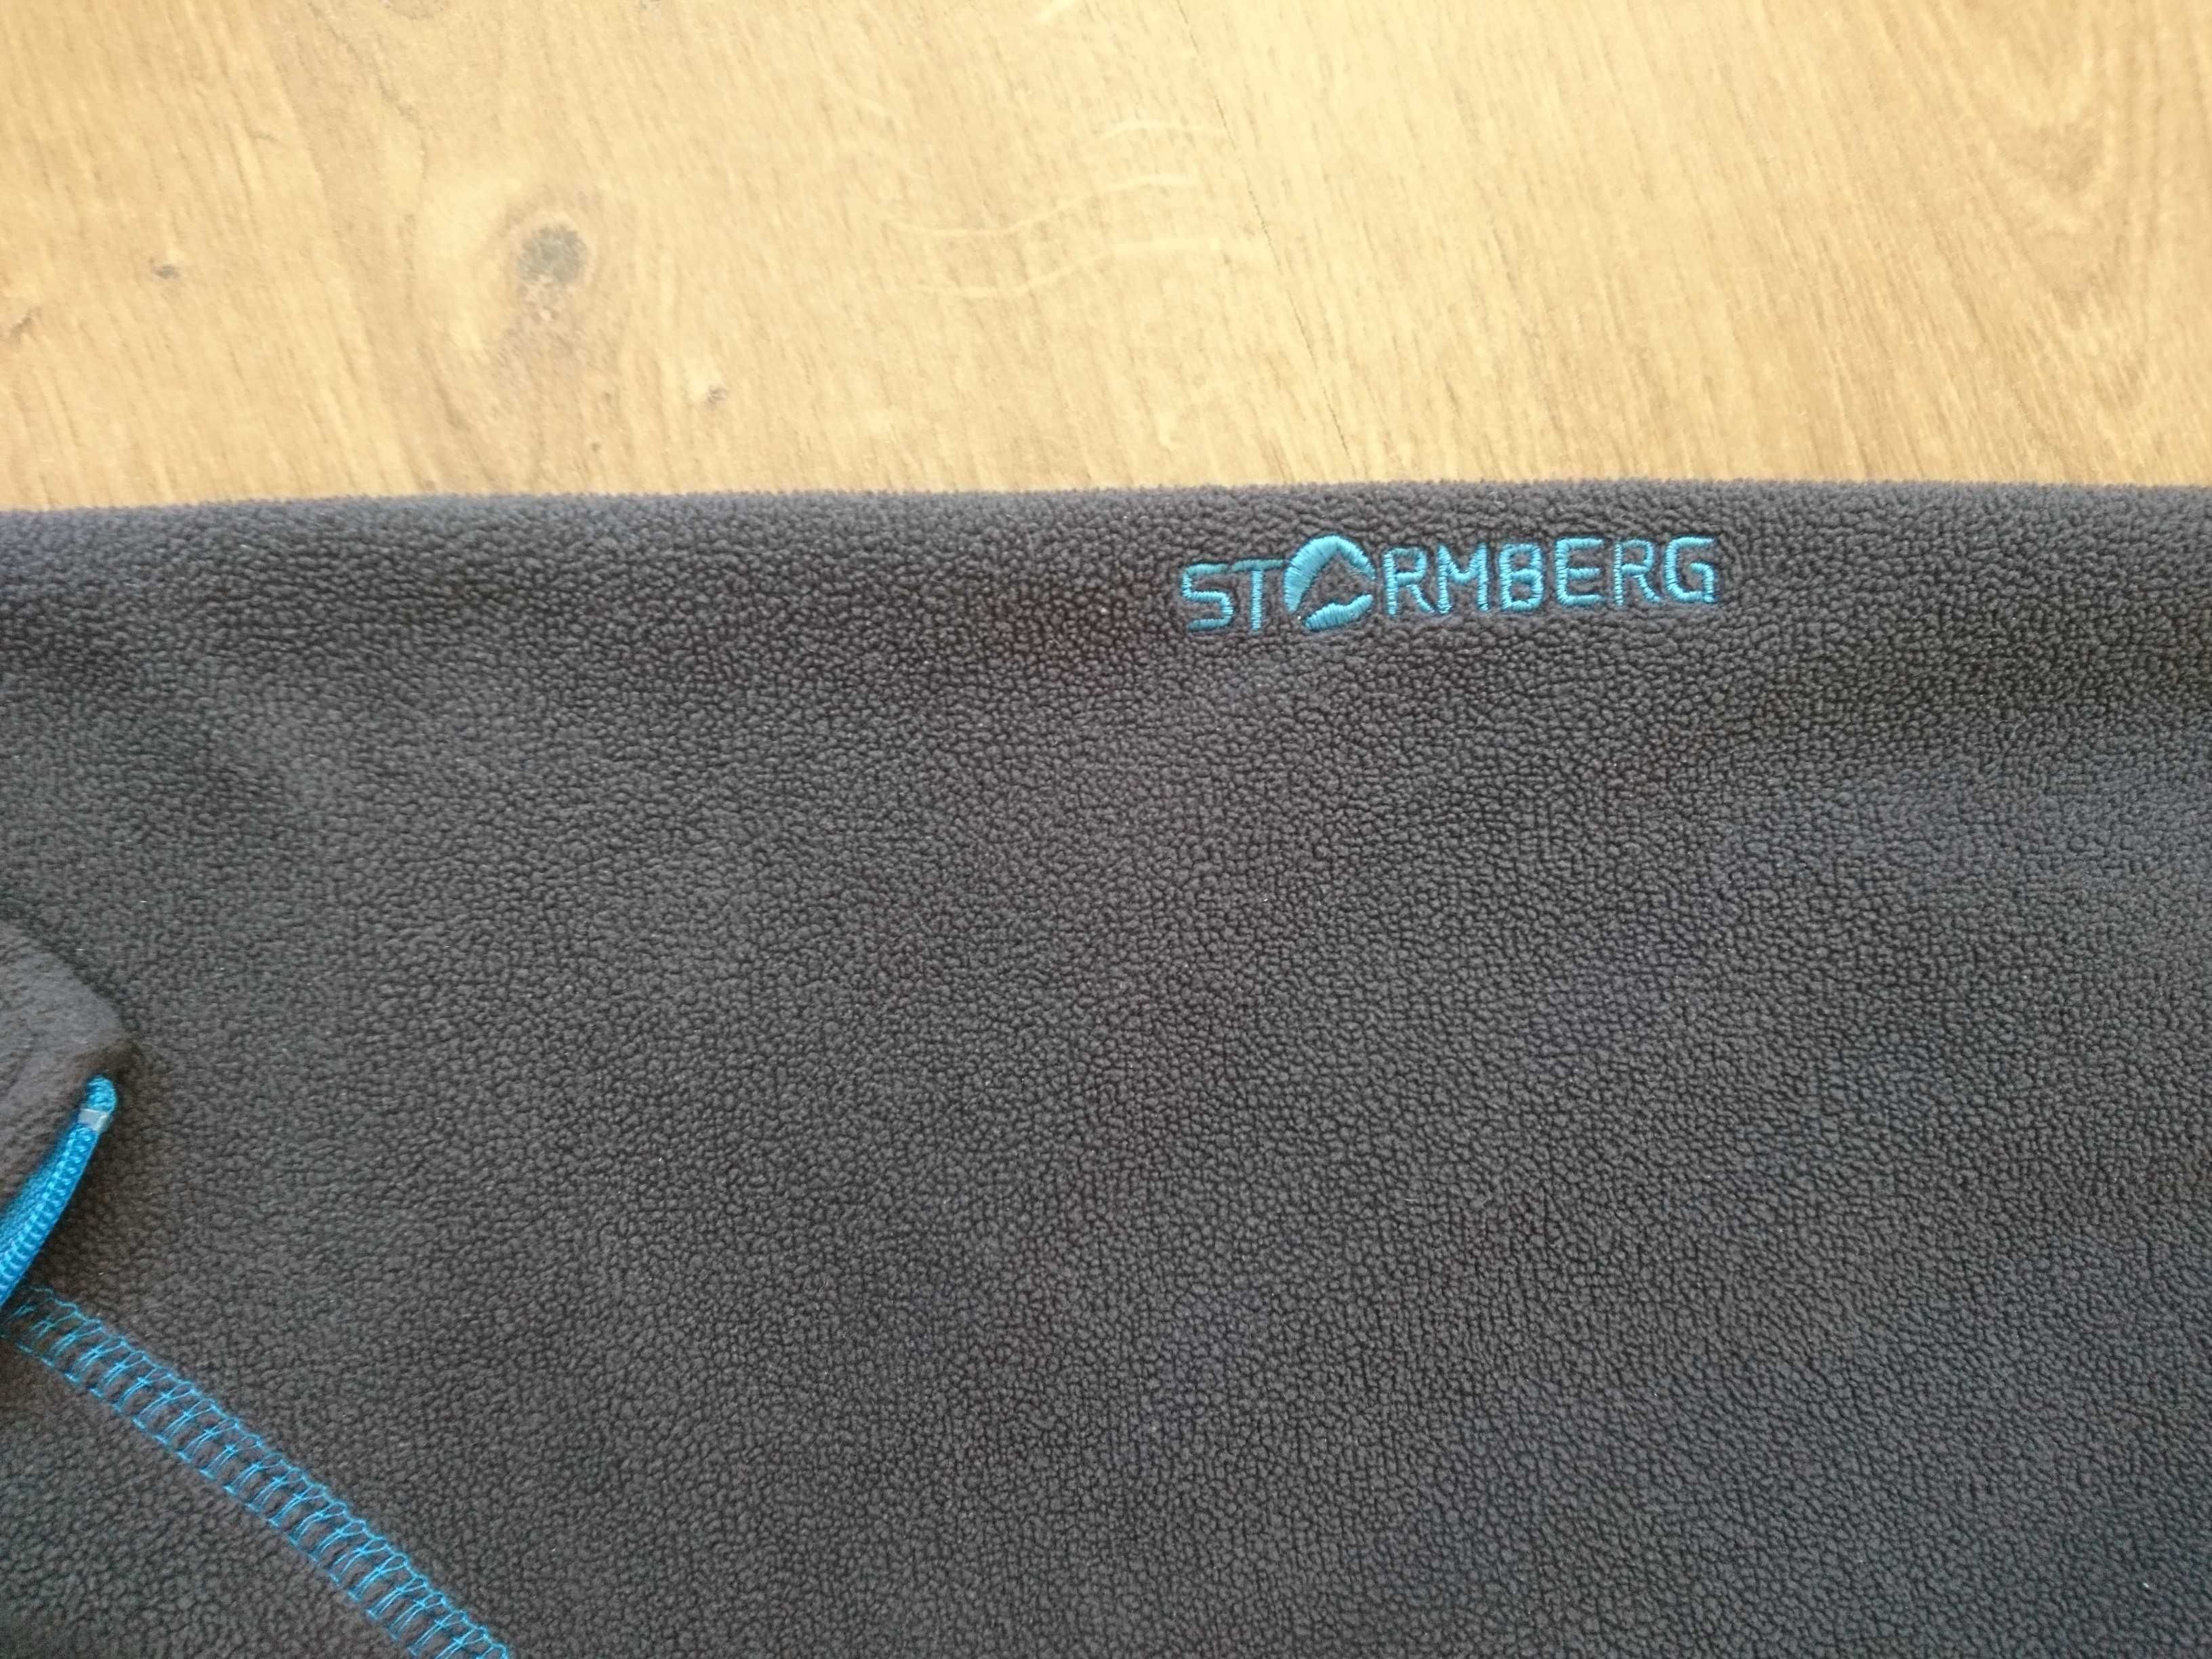 Bluza męska firmy Stormberg rozmiar M